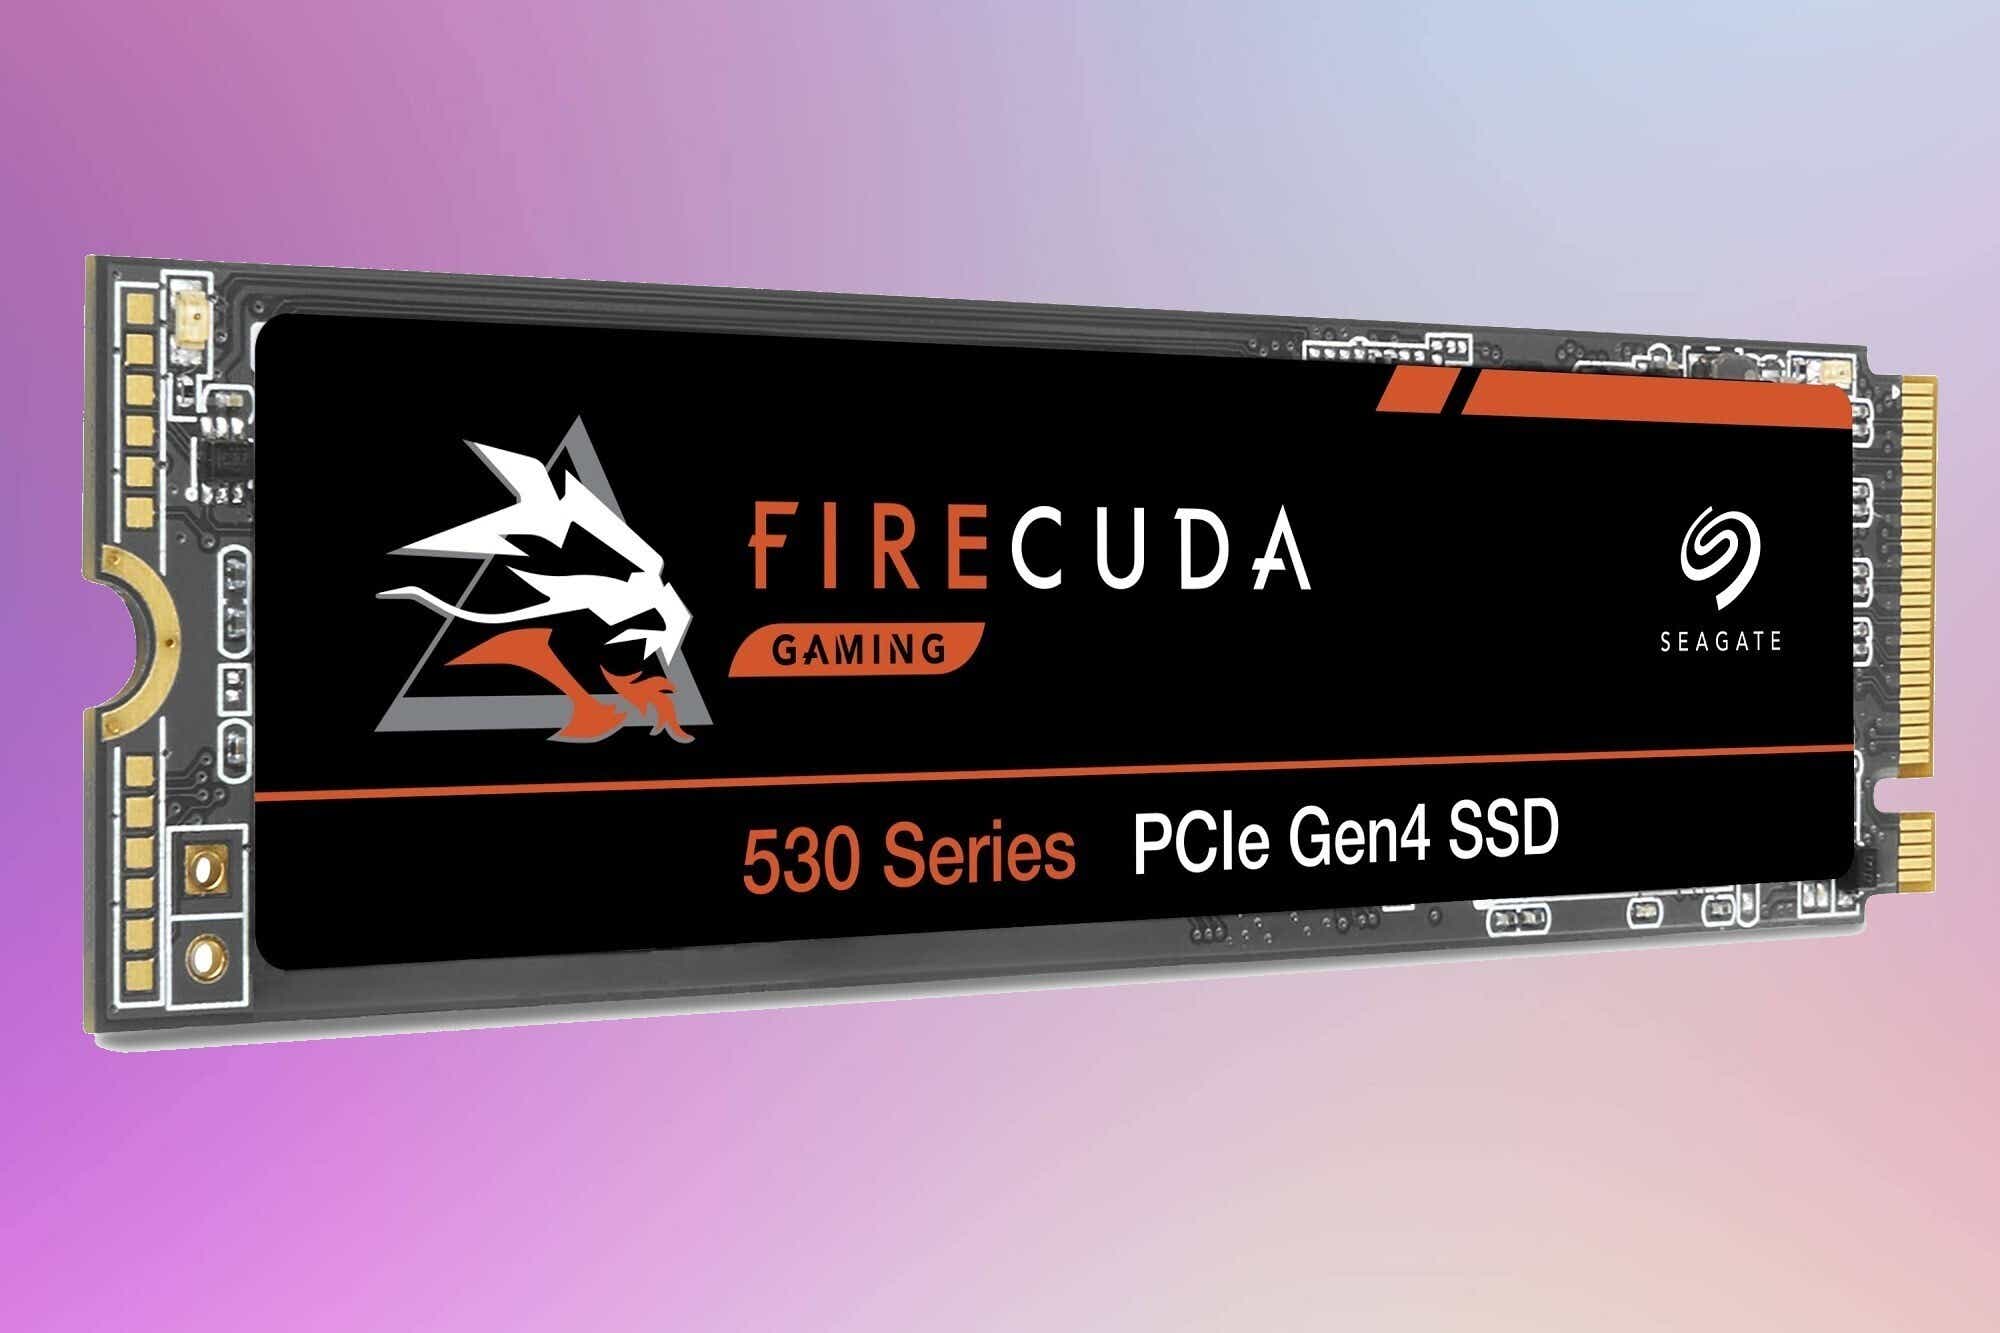 Seagate Firecuda 530 - Legjobb PCIe 4.0 SSD második helyezett